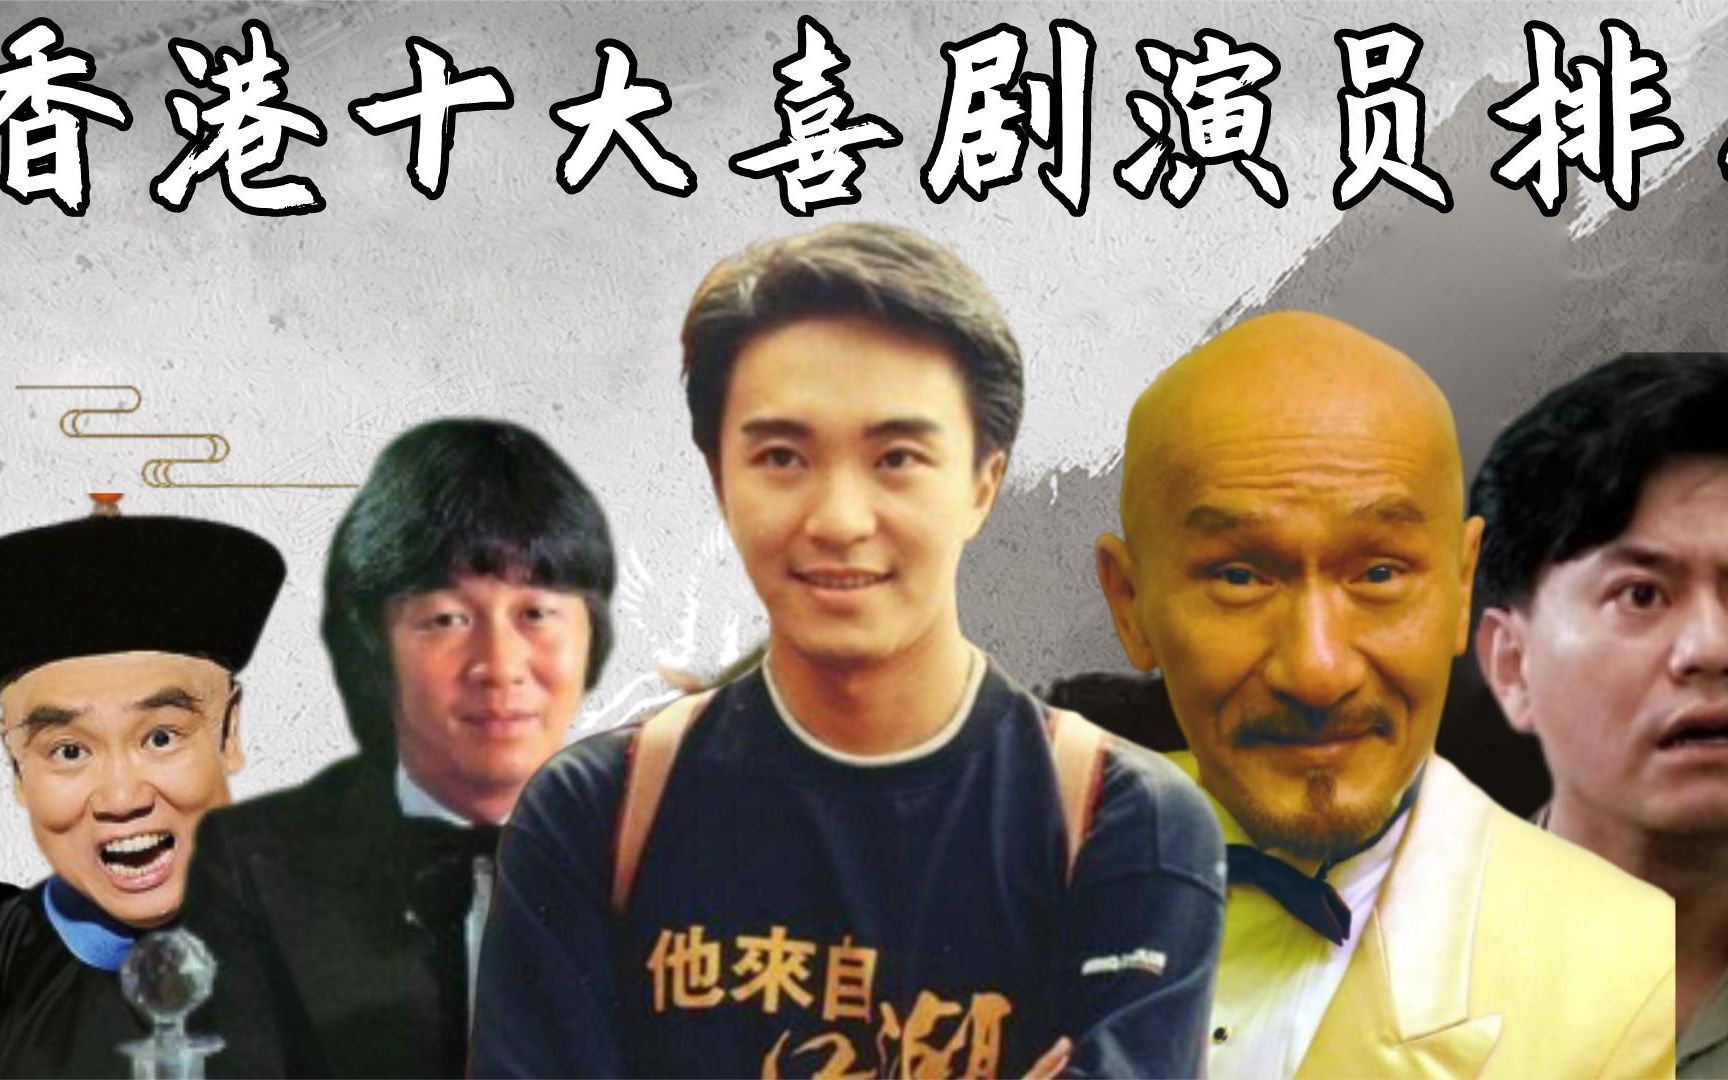 香港笑星男演员名单图片